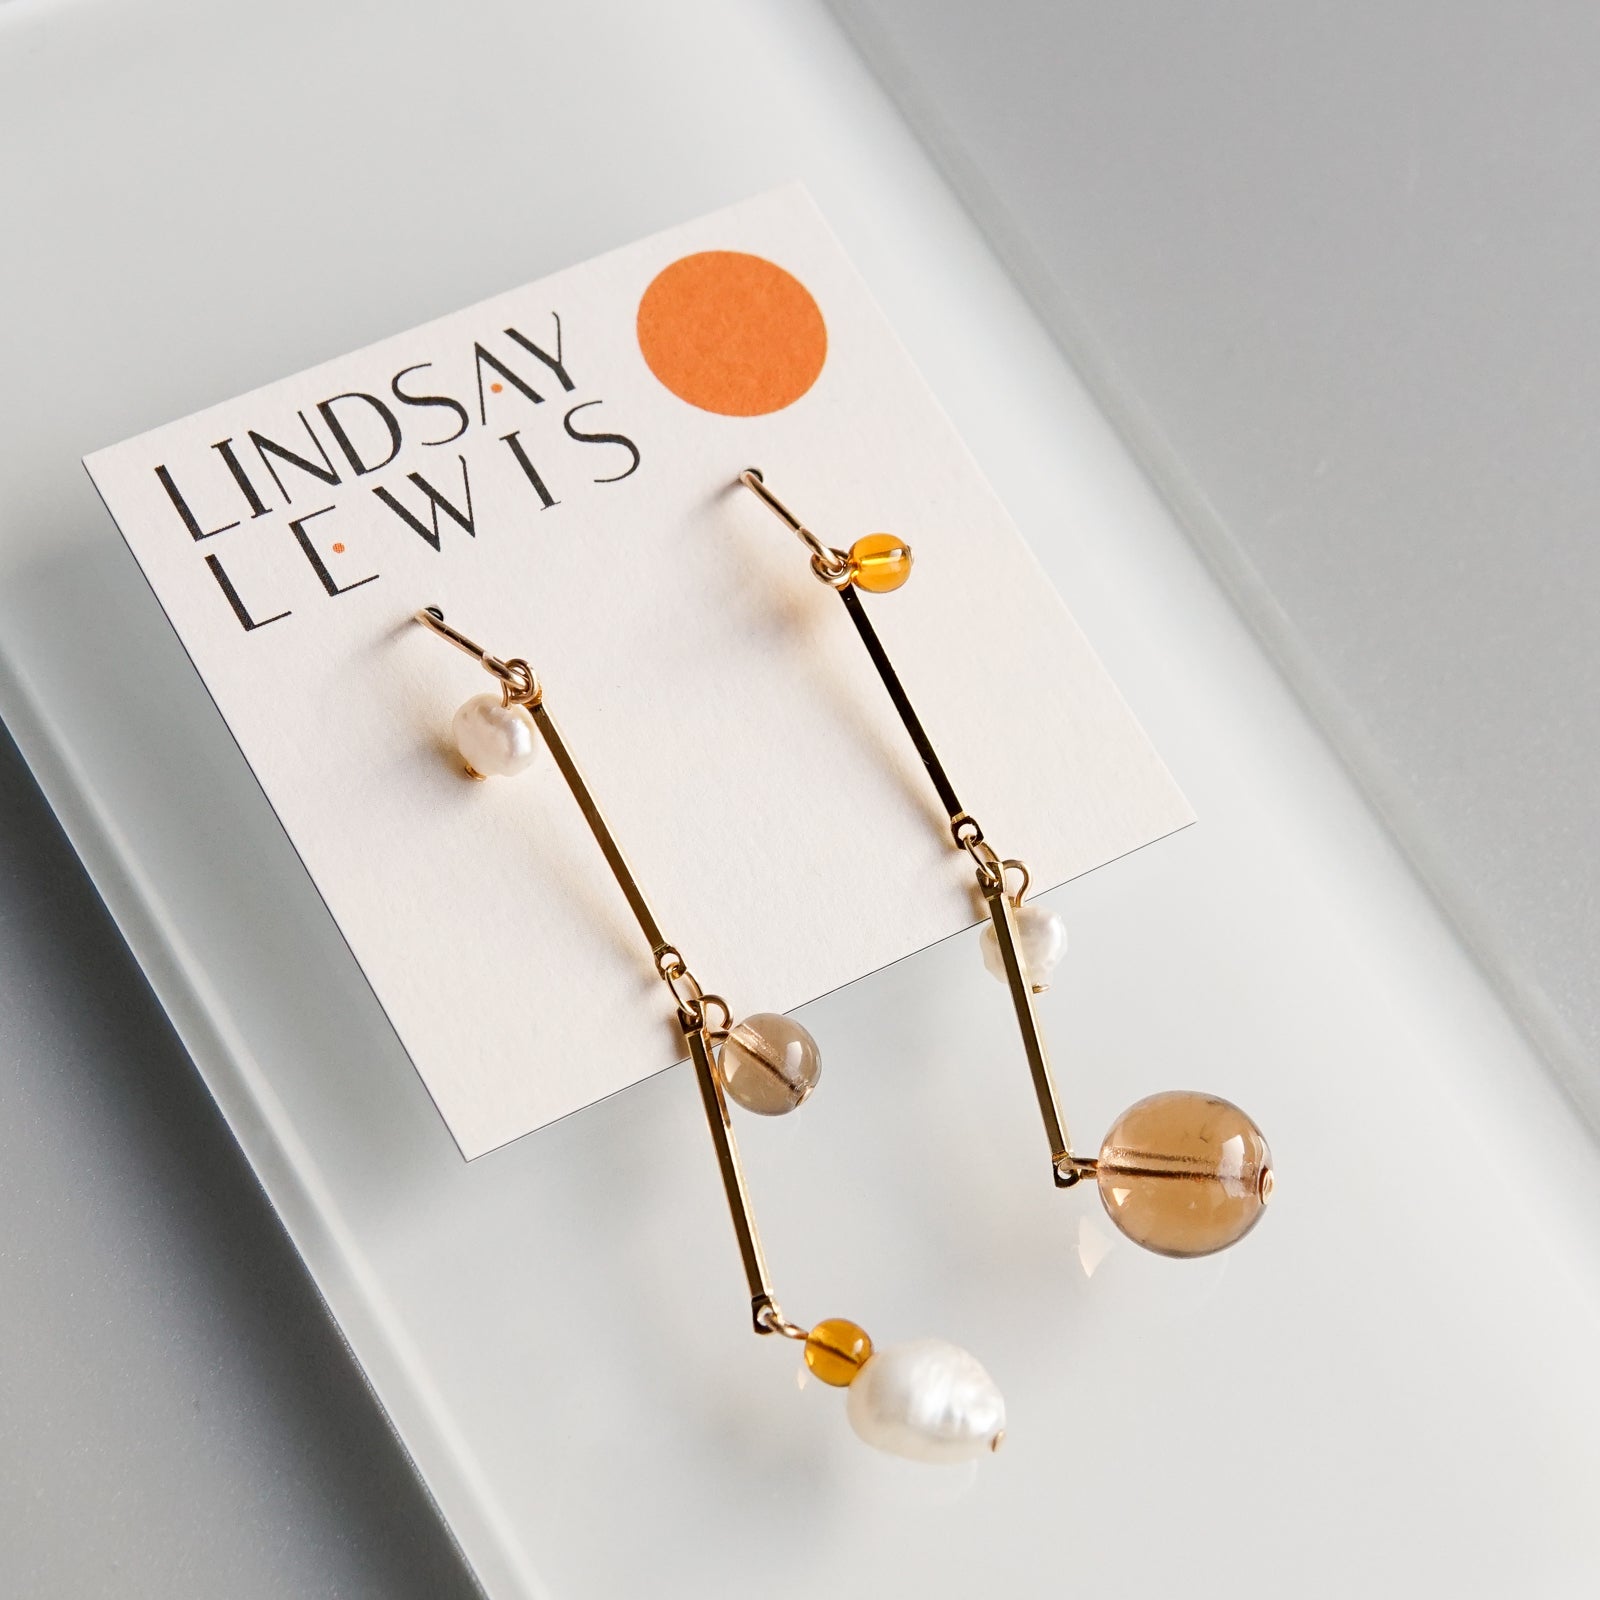 Lindsay Lewis: 2" Tan Fête Earrings